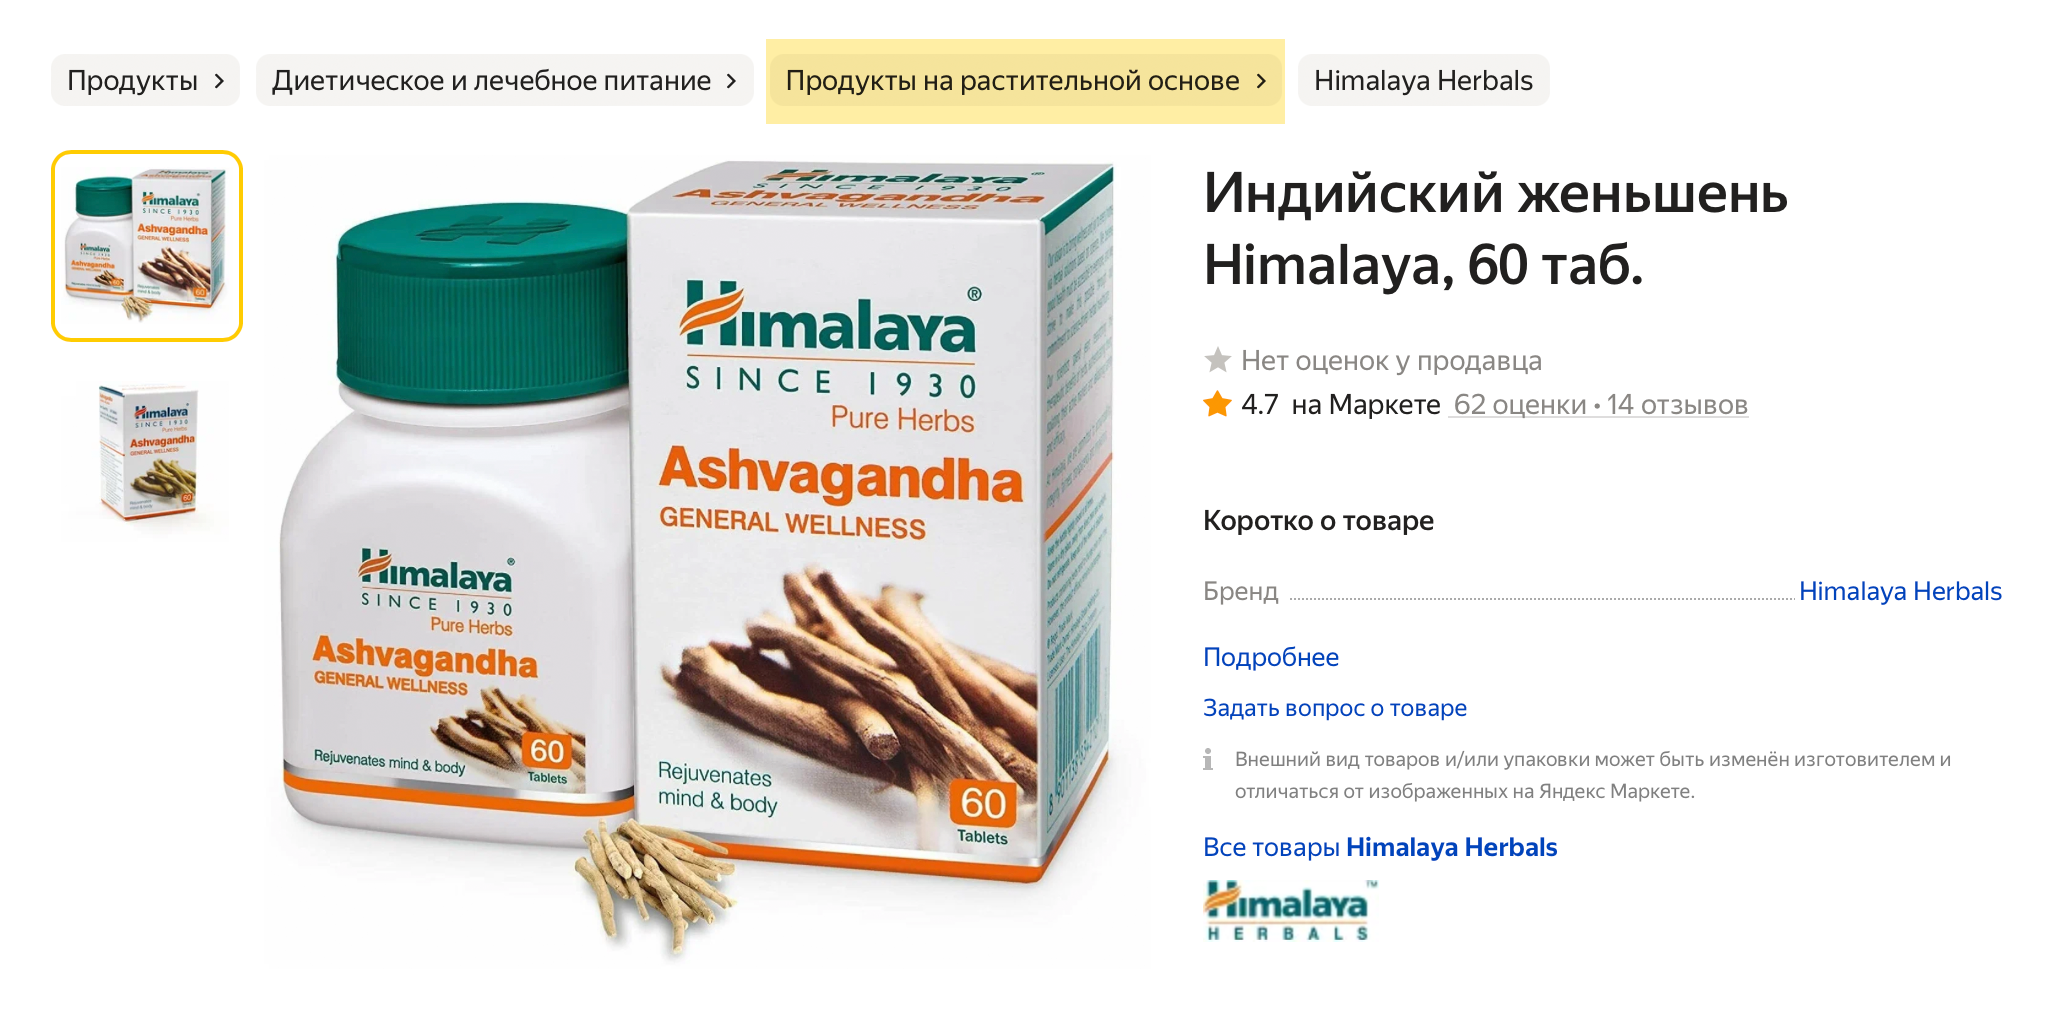 Ашваганда в таблетках, которая продается в разделе «Продукты на растительной основе». Источник: market.yandex.ru